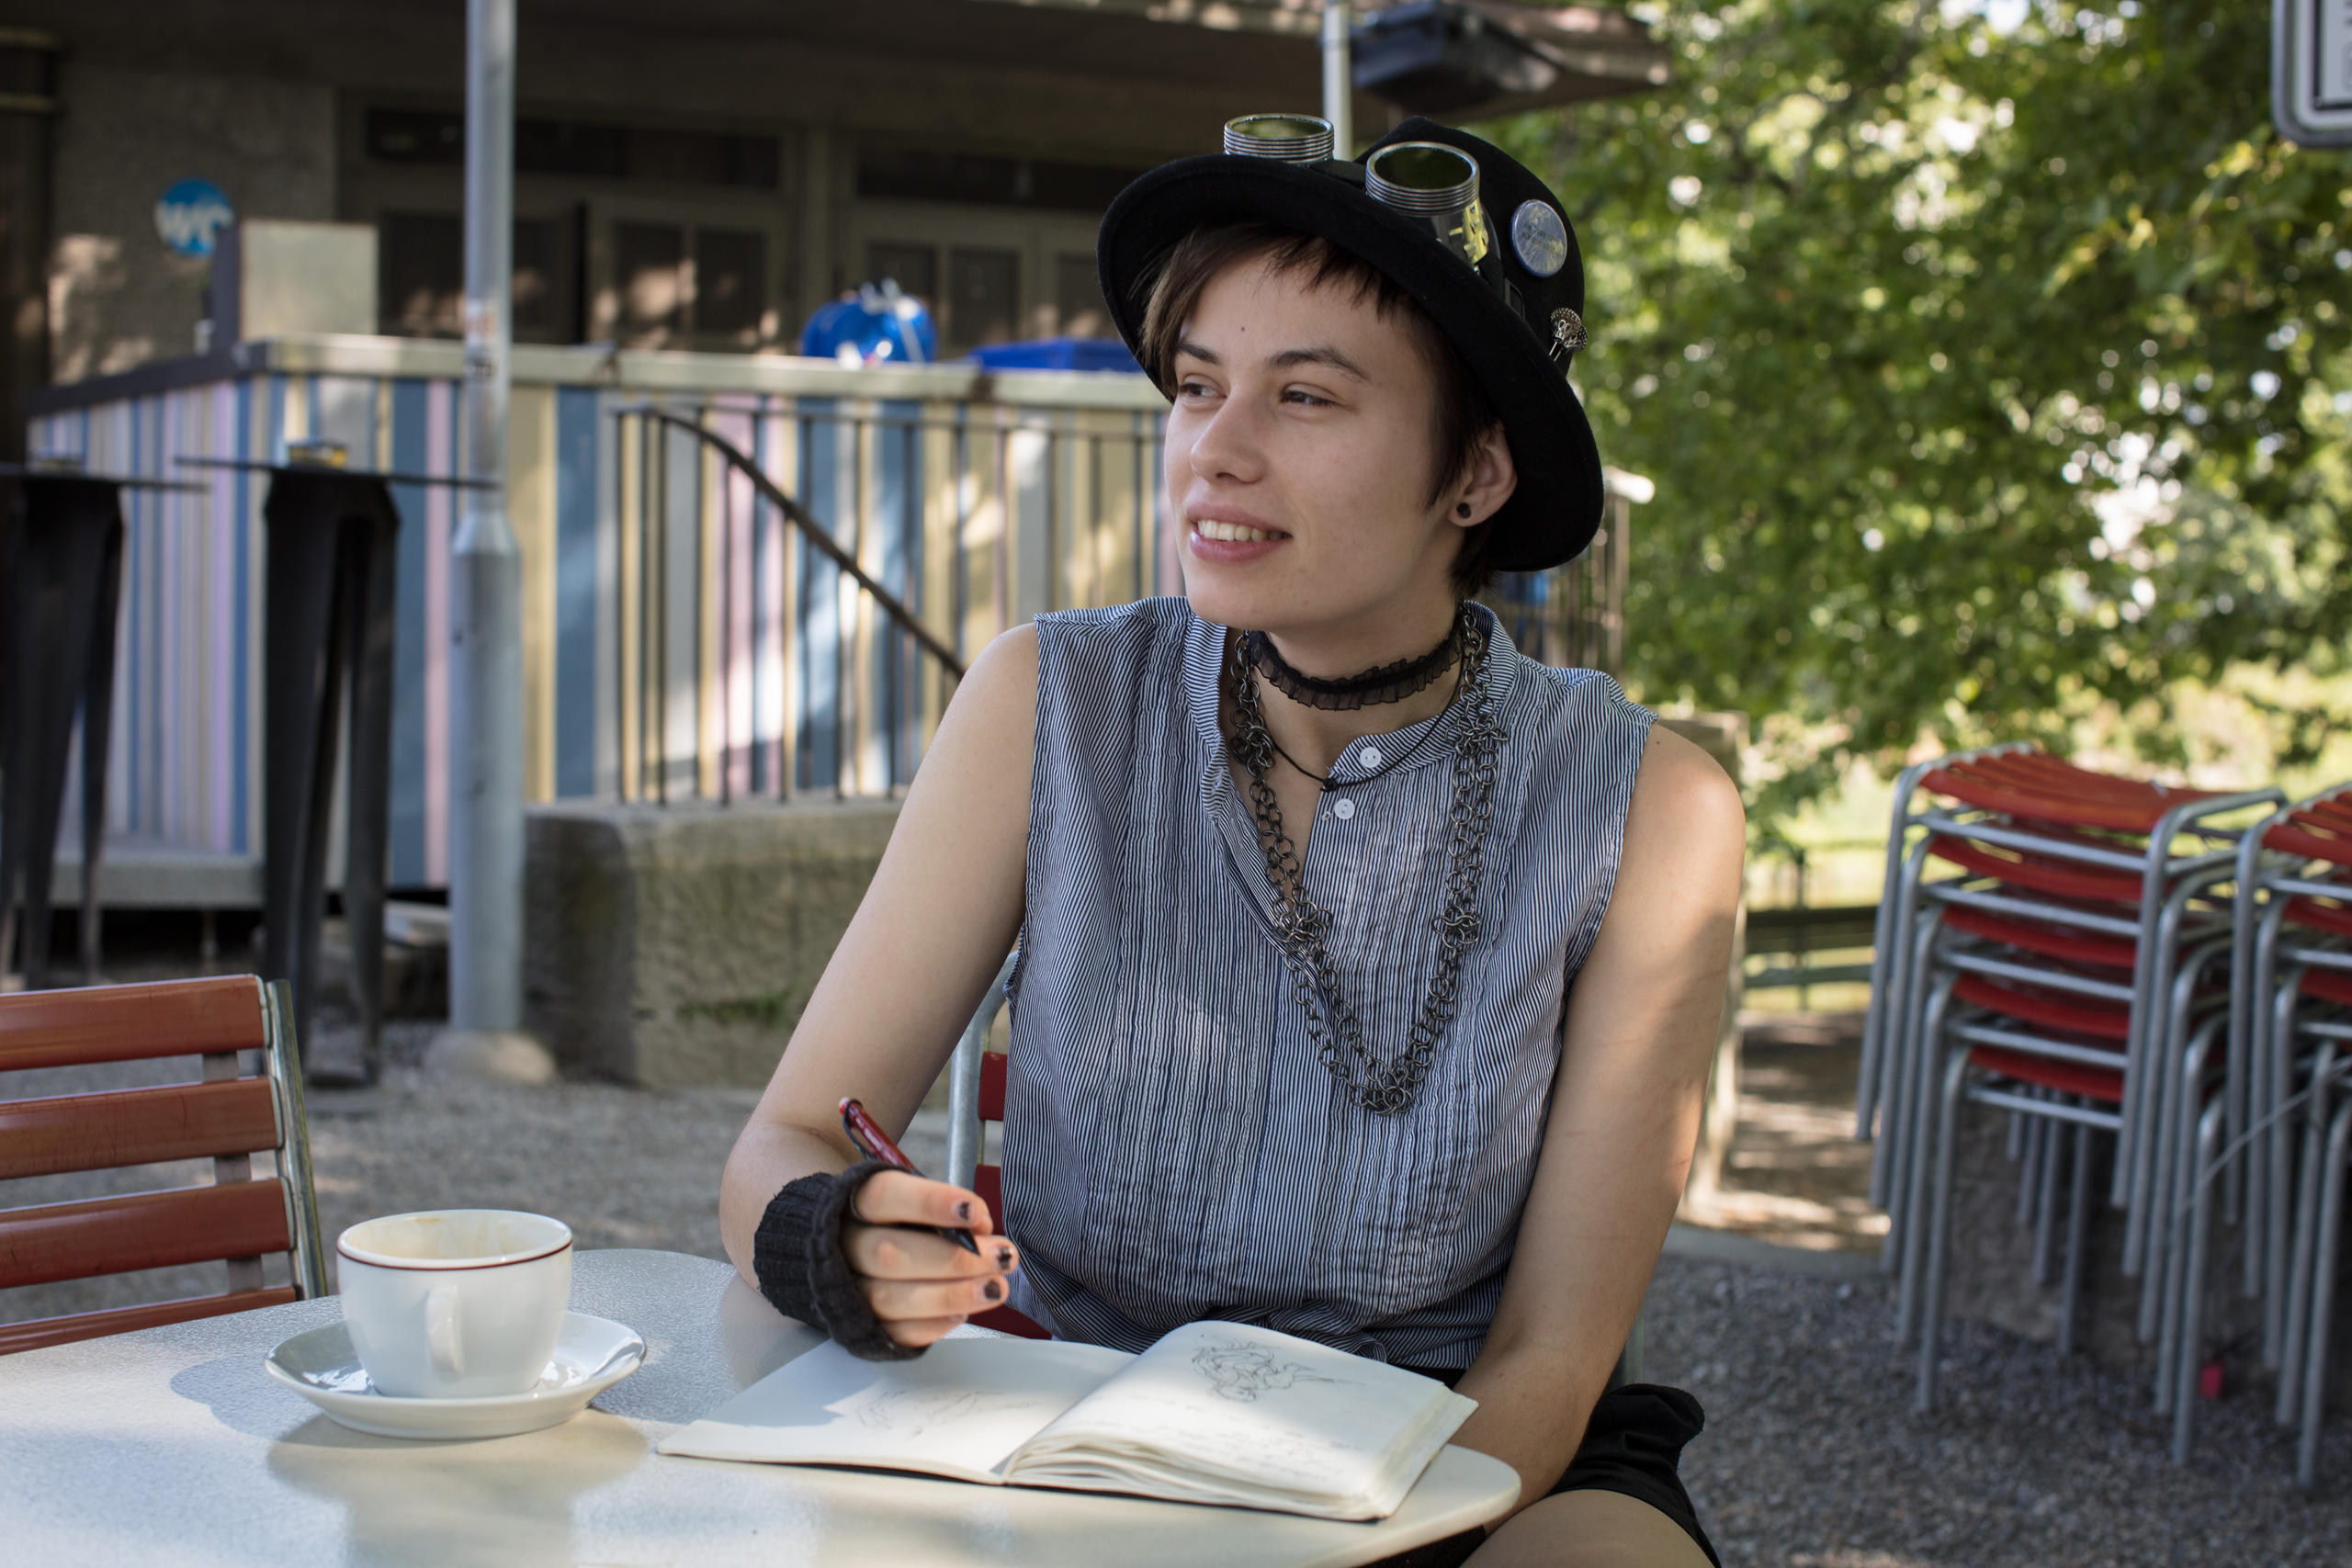 Eine Frau mit Hut sitzt in einem Garten an einem Tisch, vor ihr eine Kaffeetasse und ein Heft.